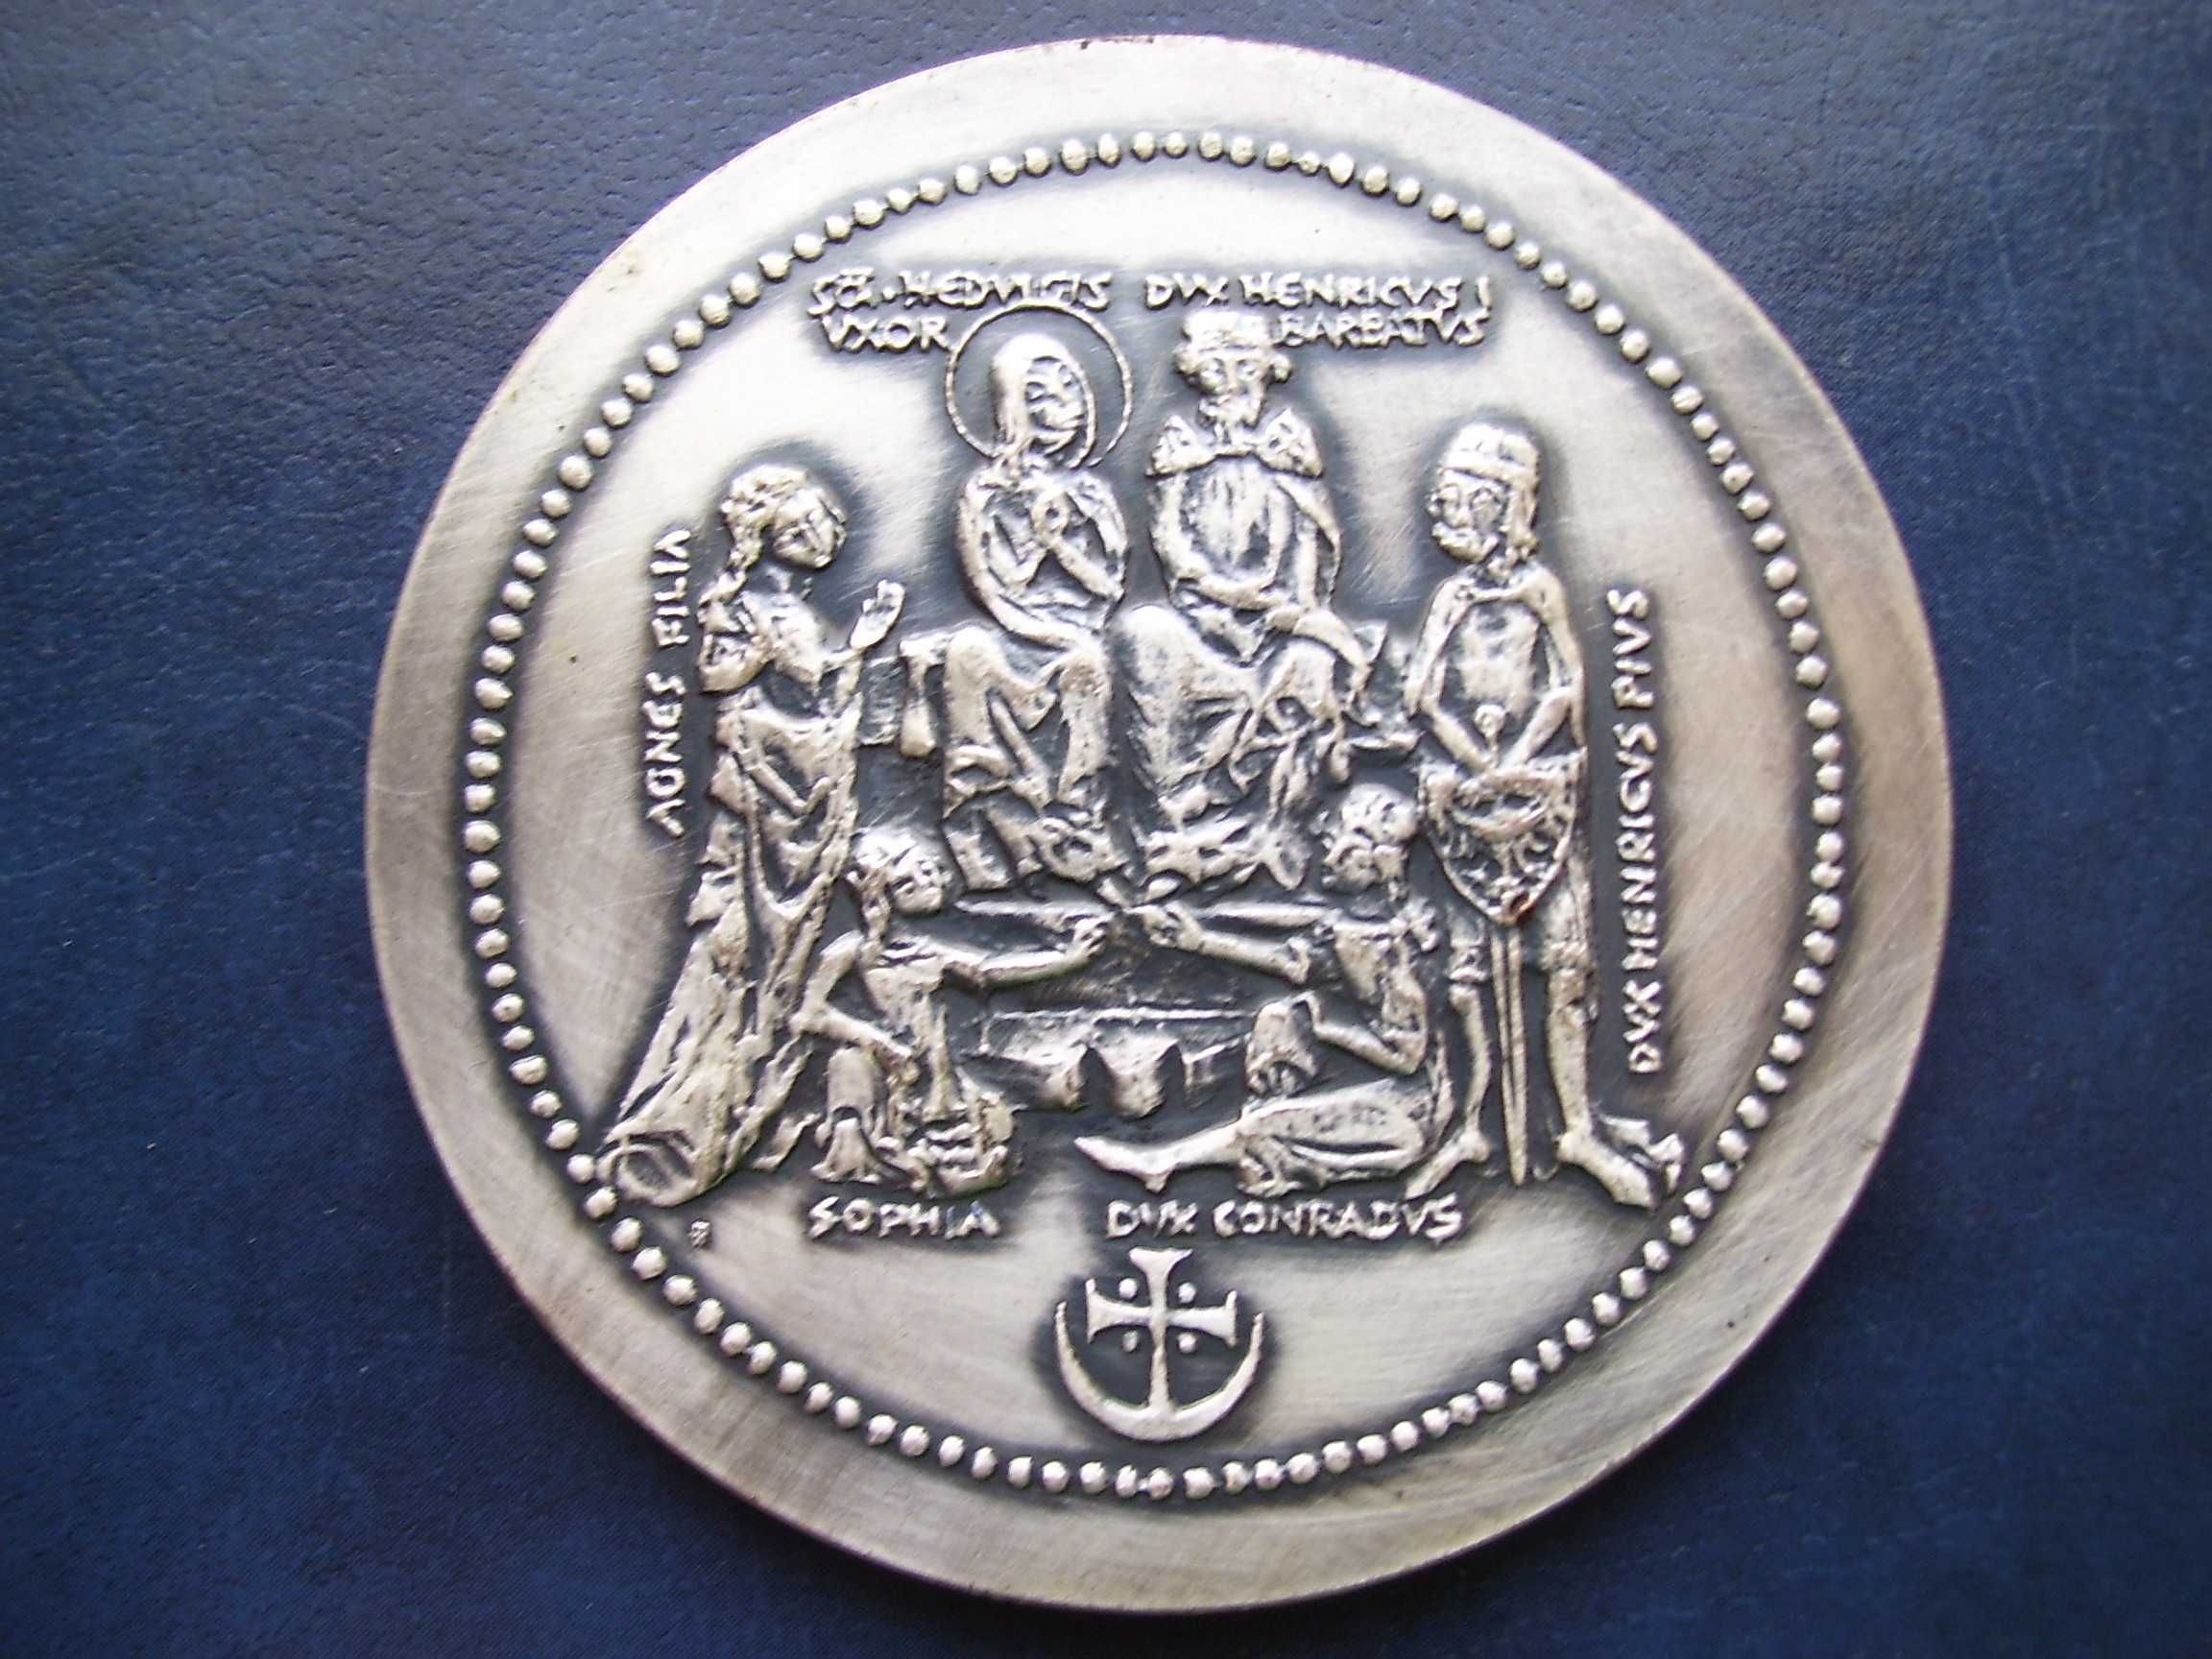 Stare monety Medal Henryk Brodaty Seria Królewska PTAiN